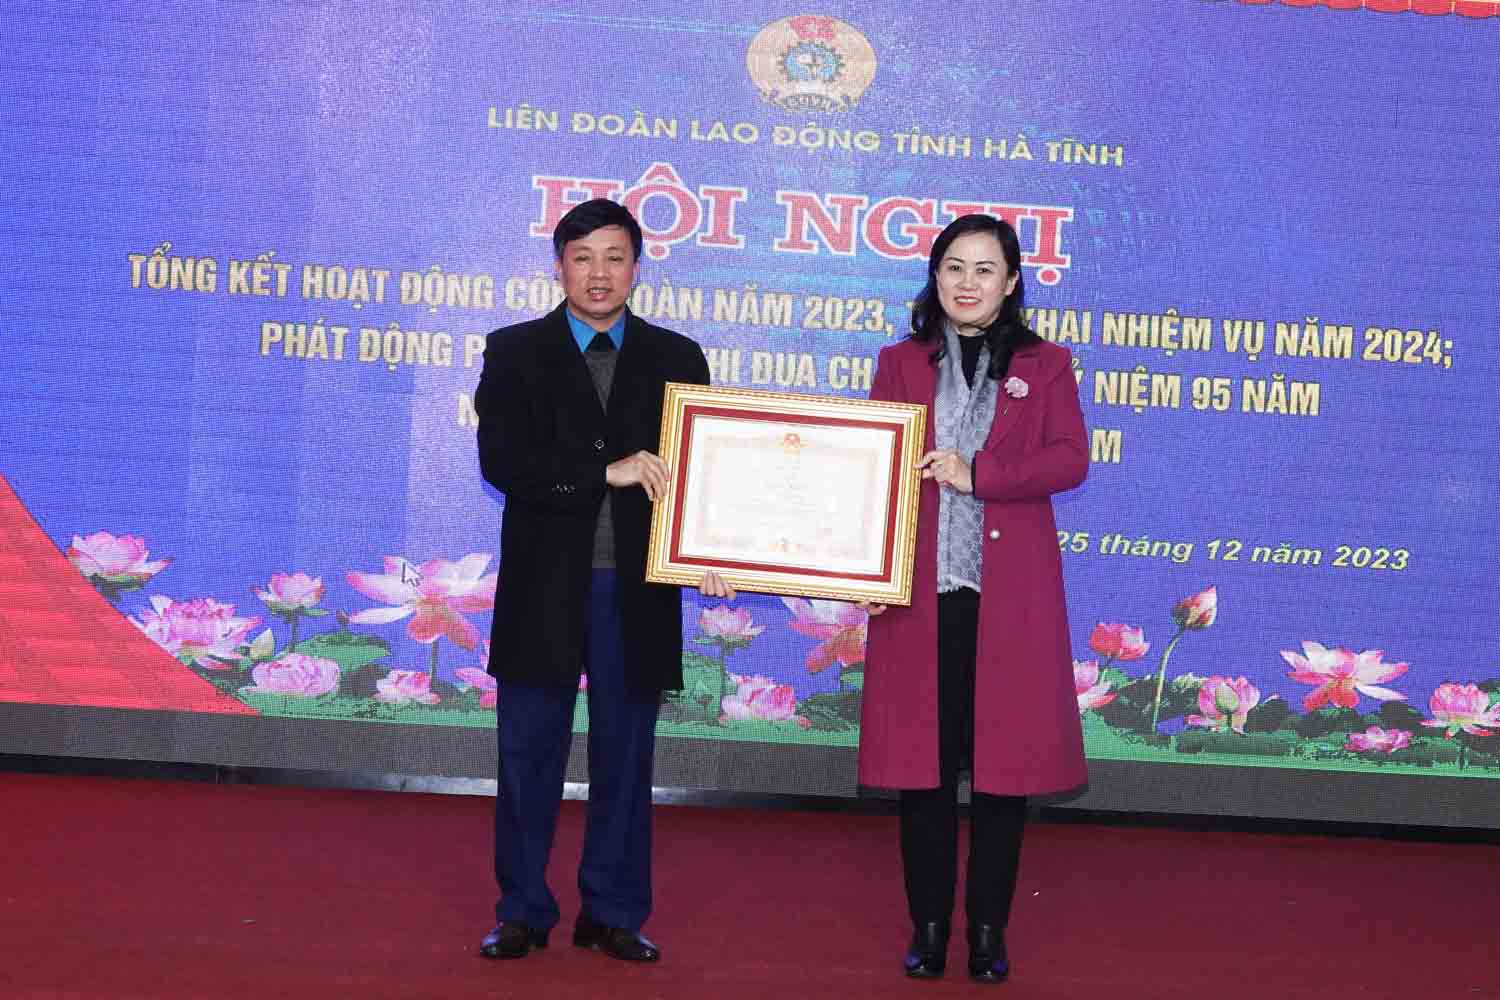 Liên đoàn Lao động tỉnh Hà Tĩnh được đề nghị tặng cờ thi đua xuất sắc